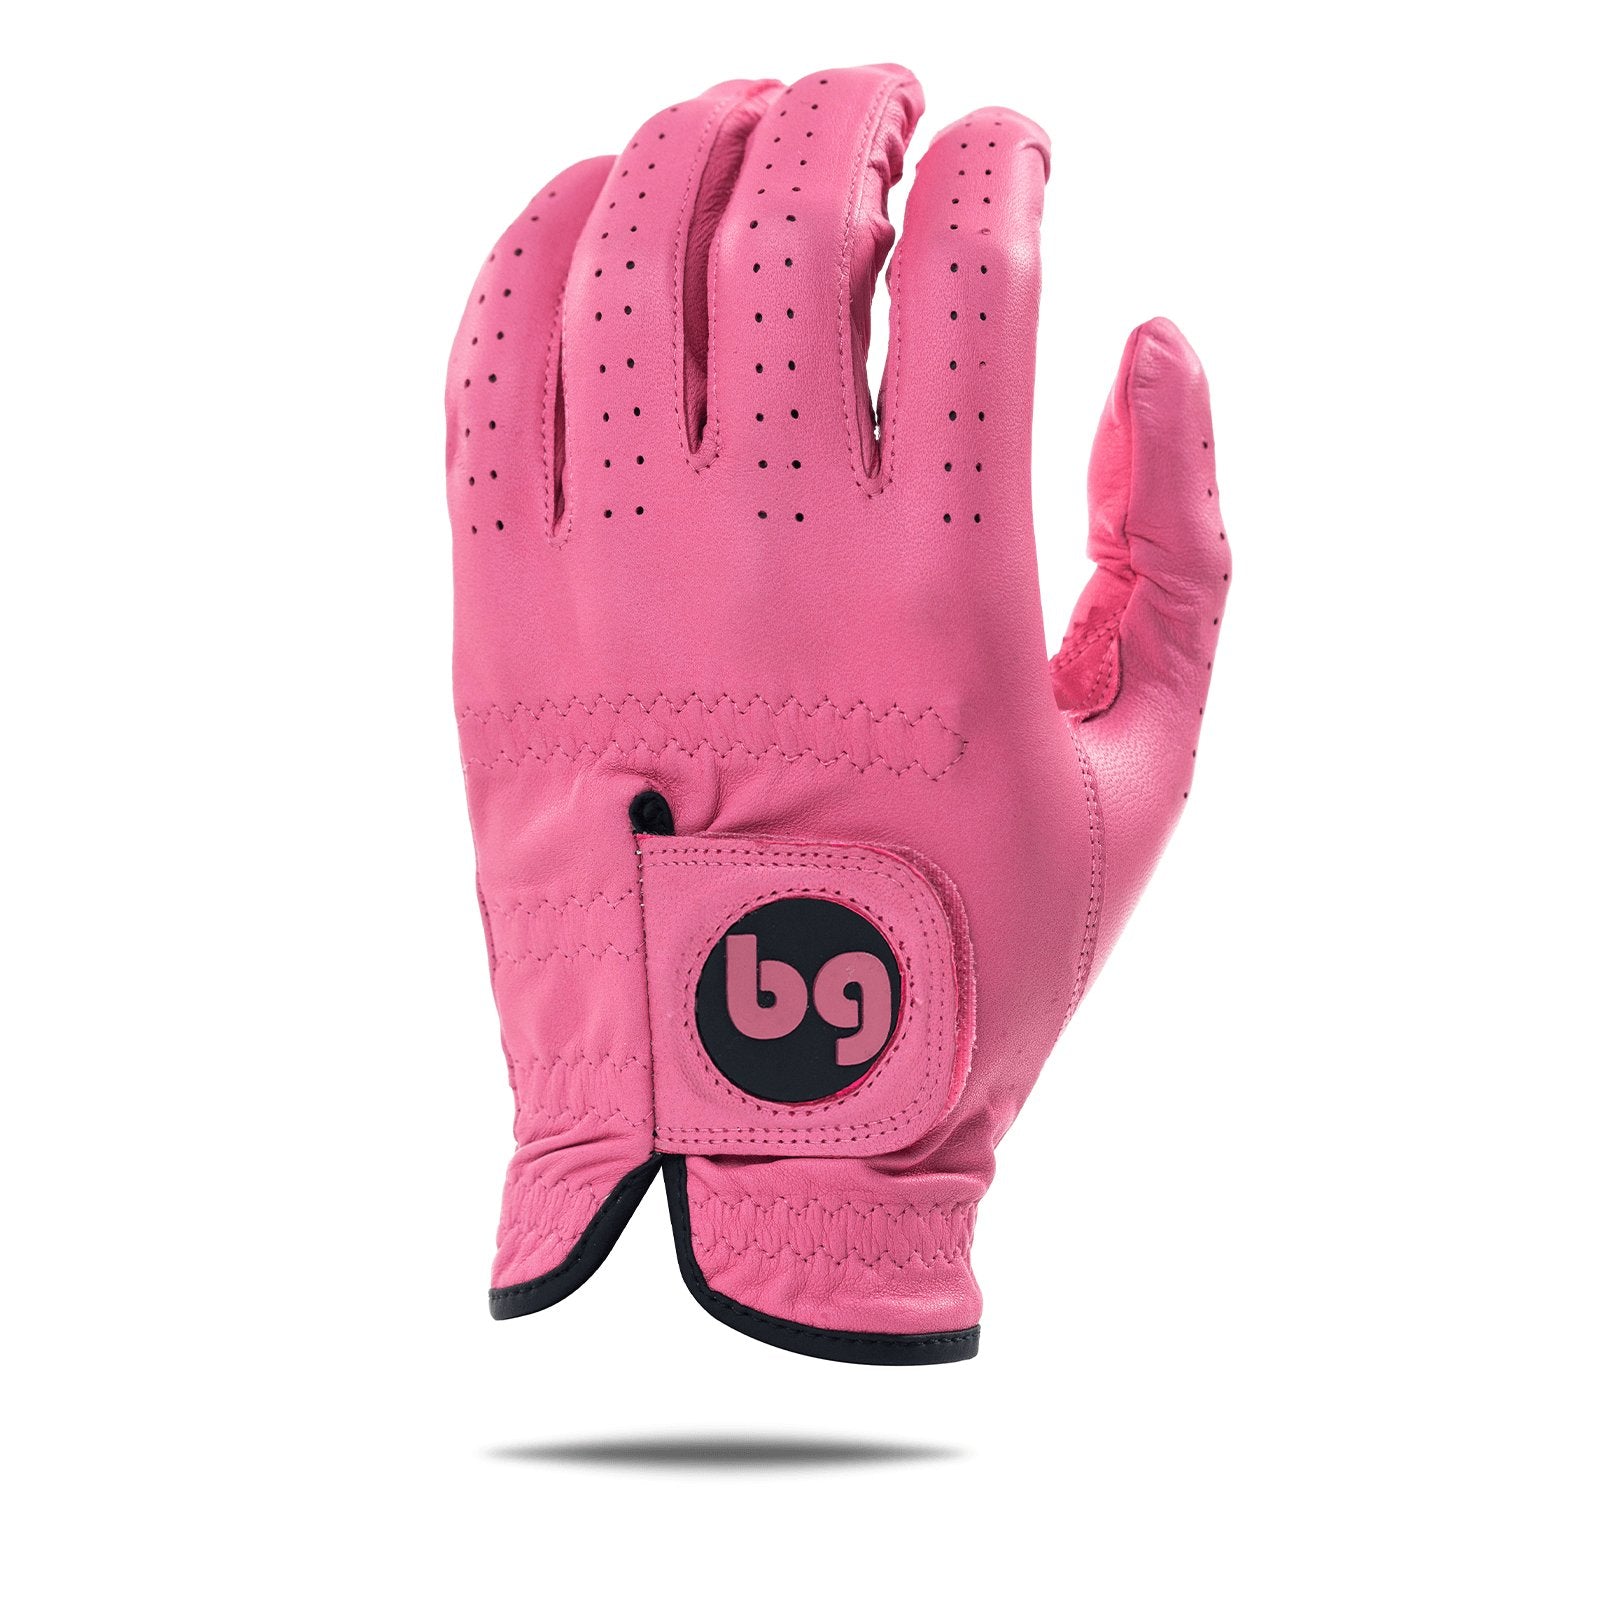 Pink Elite Tour Golf Glove - Bender Gloves